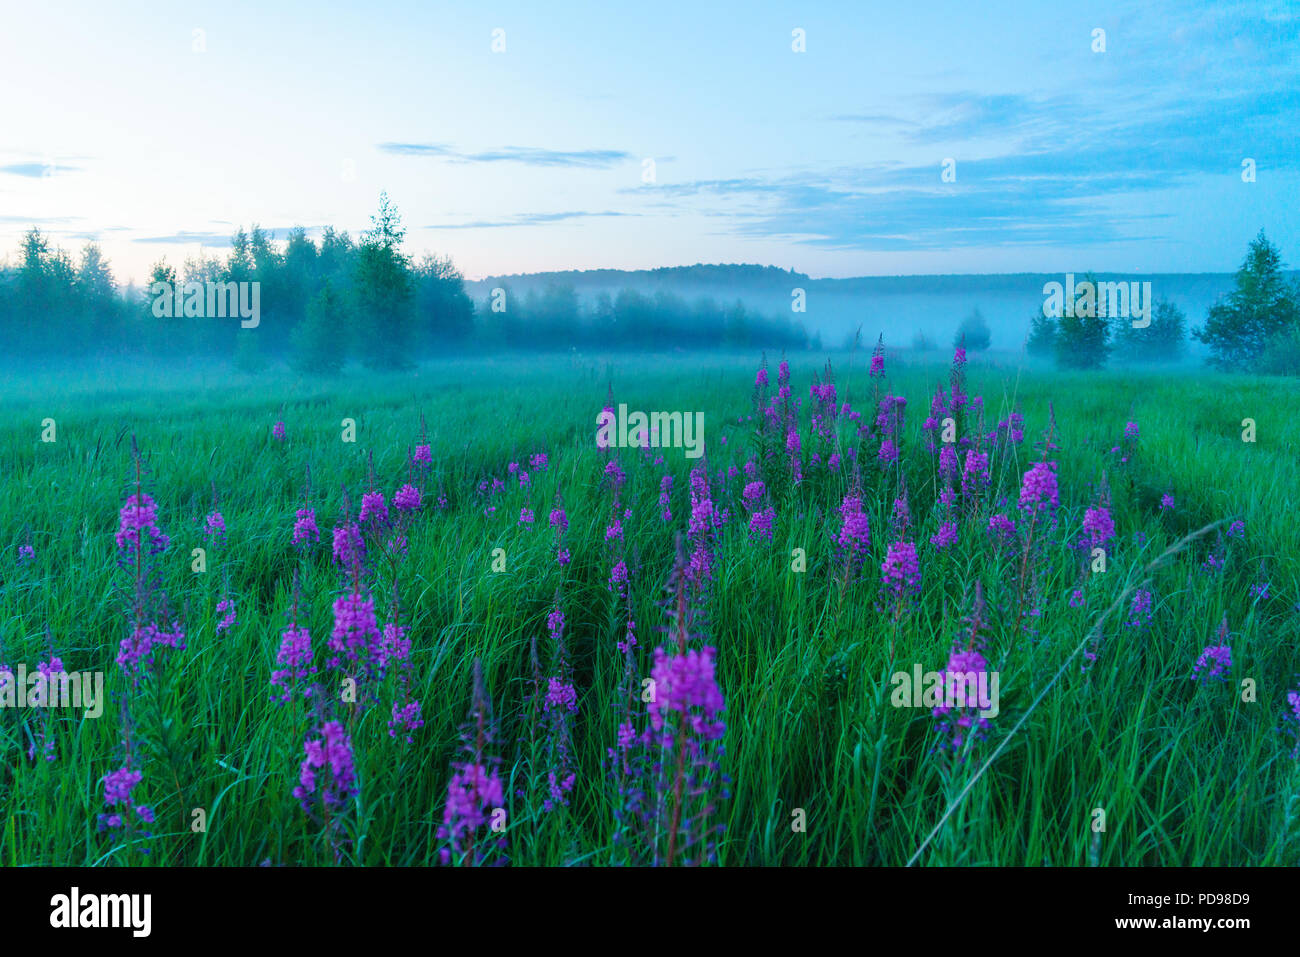 Misty romantico paesaggio con fioritura fireweed (Chamaenerion angustifolium), betulle ed erba verde in estate, la regione di Mosca, Russia Foto Stock